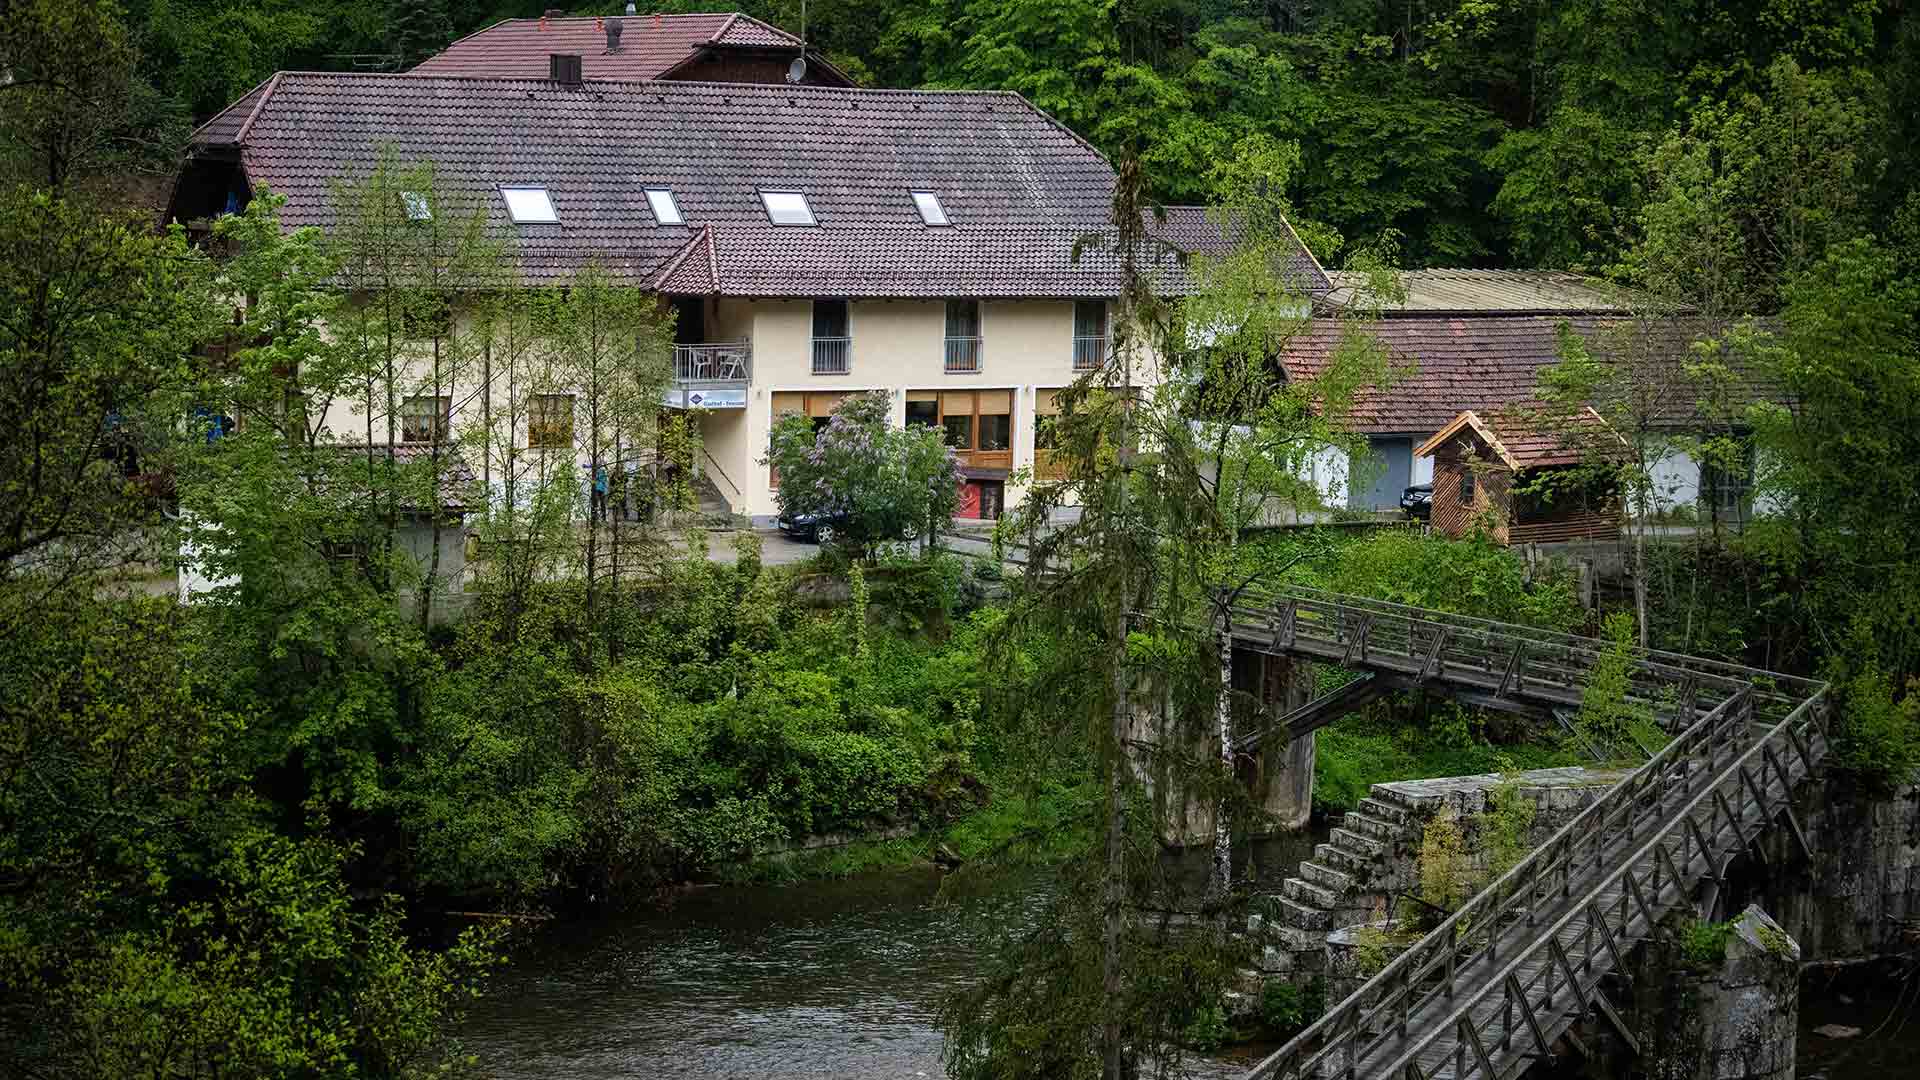 Encontradas tres personas muertas con flechas de ballestas en un hotel de Alemania